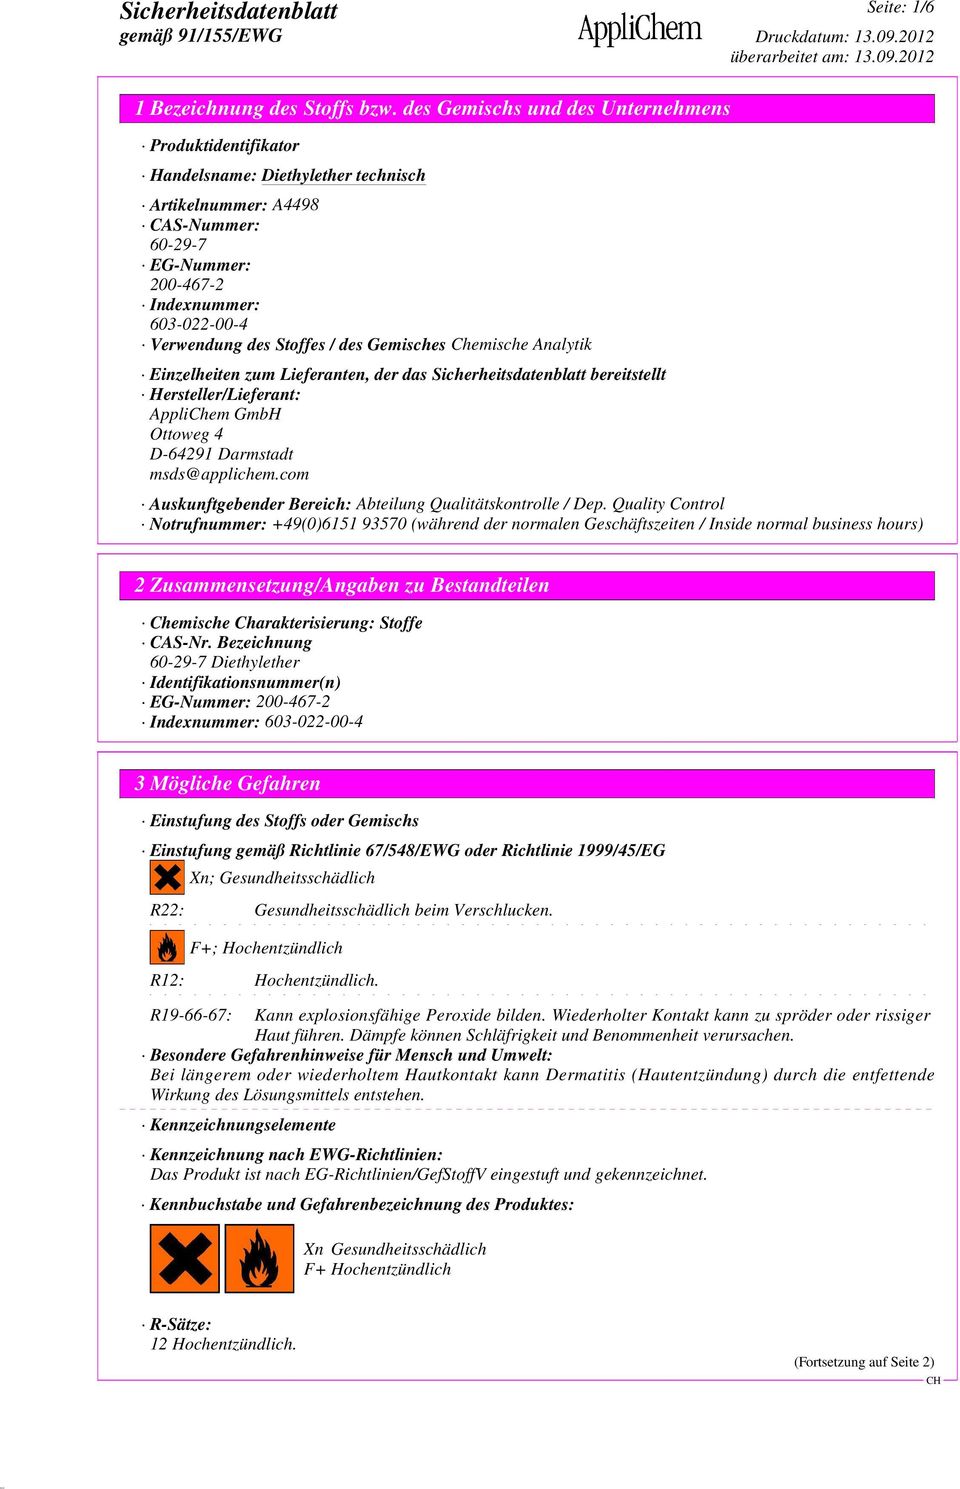 Analytik Einzelheiten zum Lieferanten, der das bereitstellt Hersteller/Lieferant: AppliChem GmbH Ottoweg 4 D-64291 Darmstadt msds@applichem.